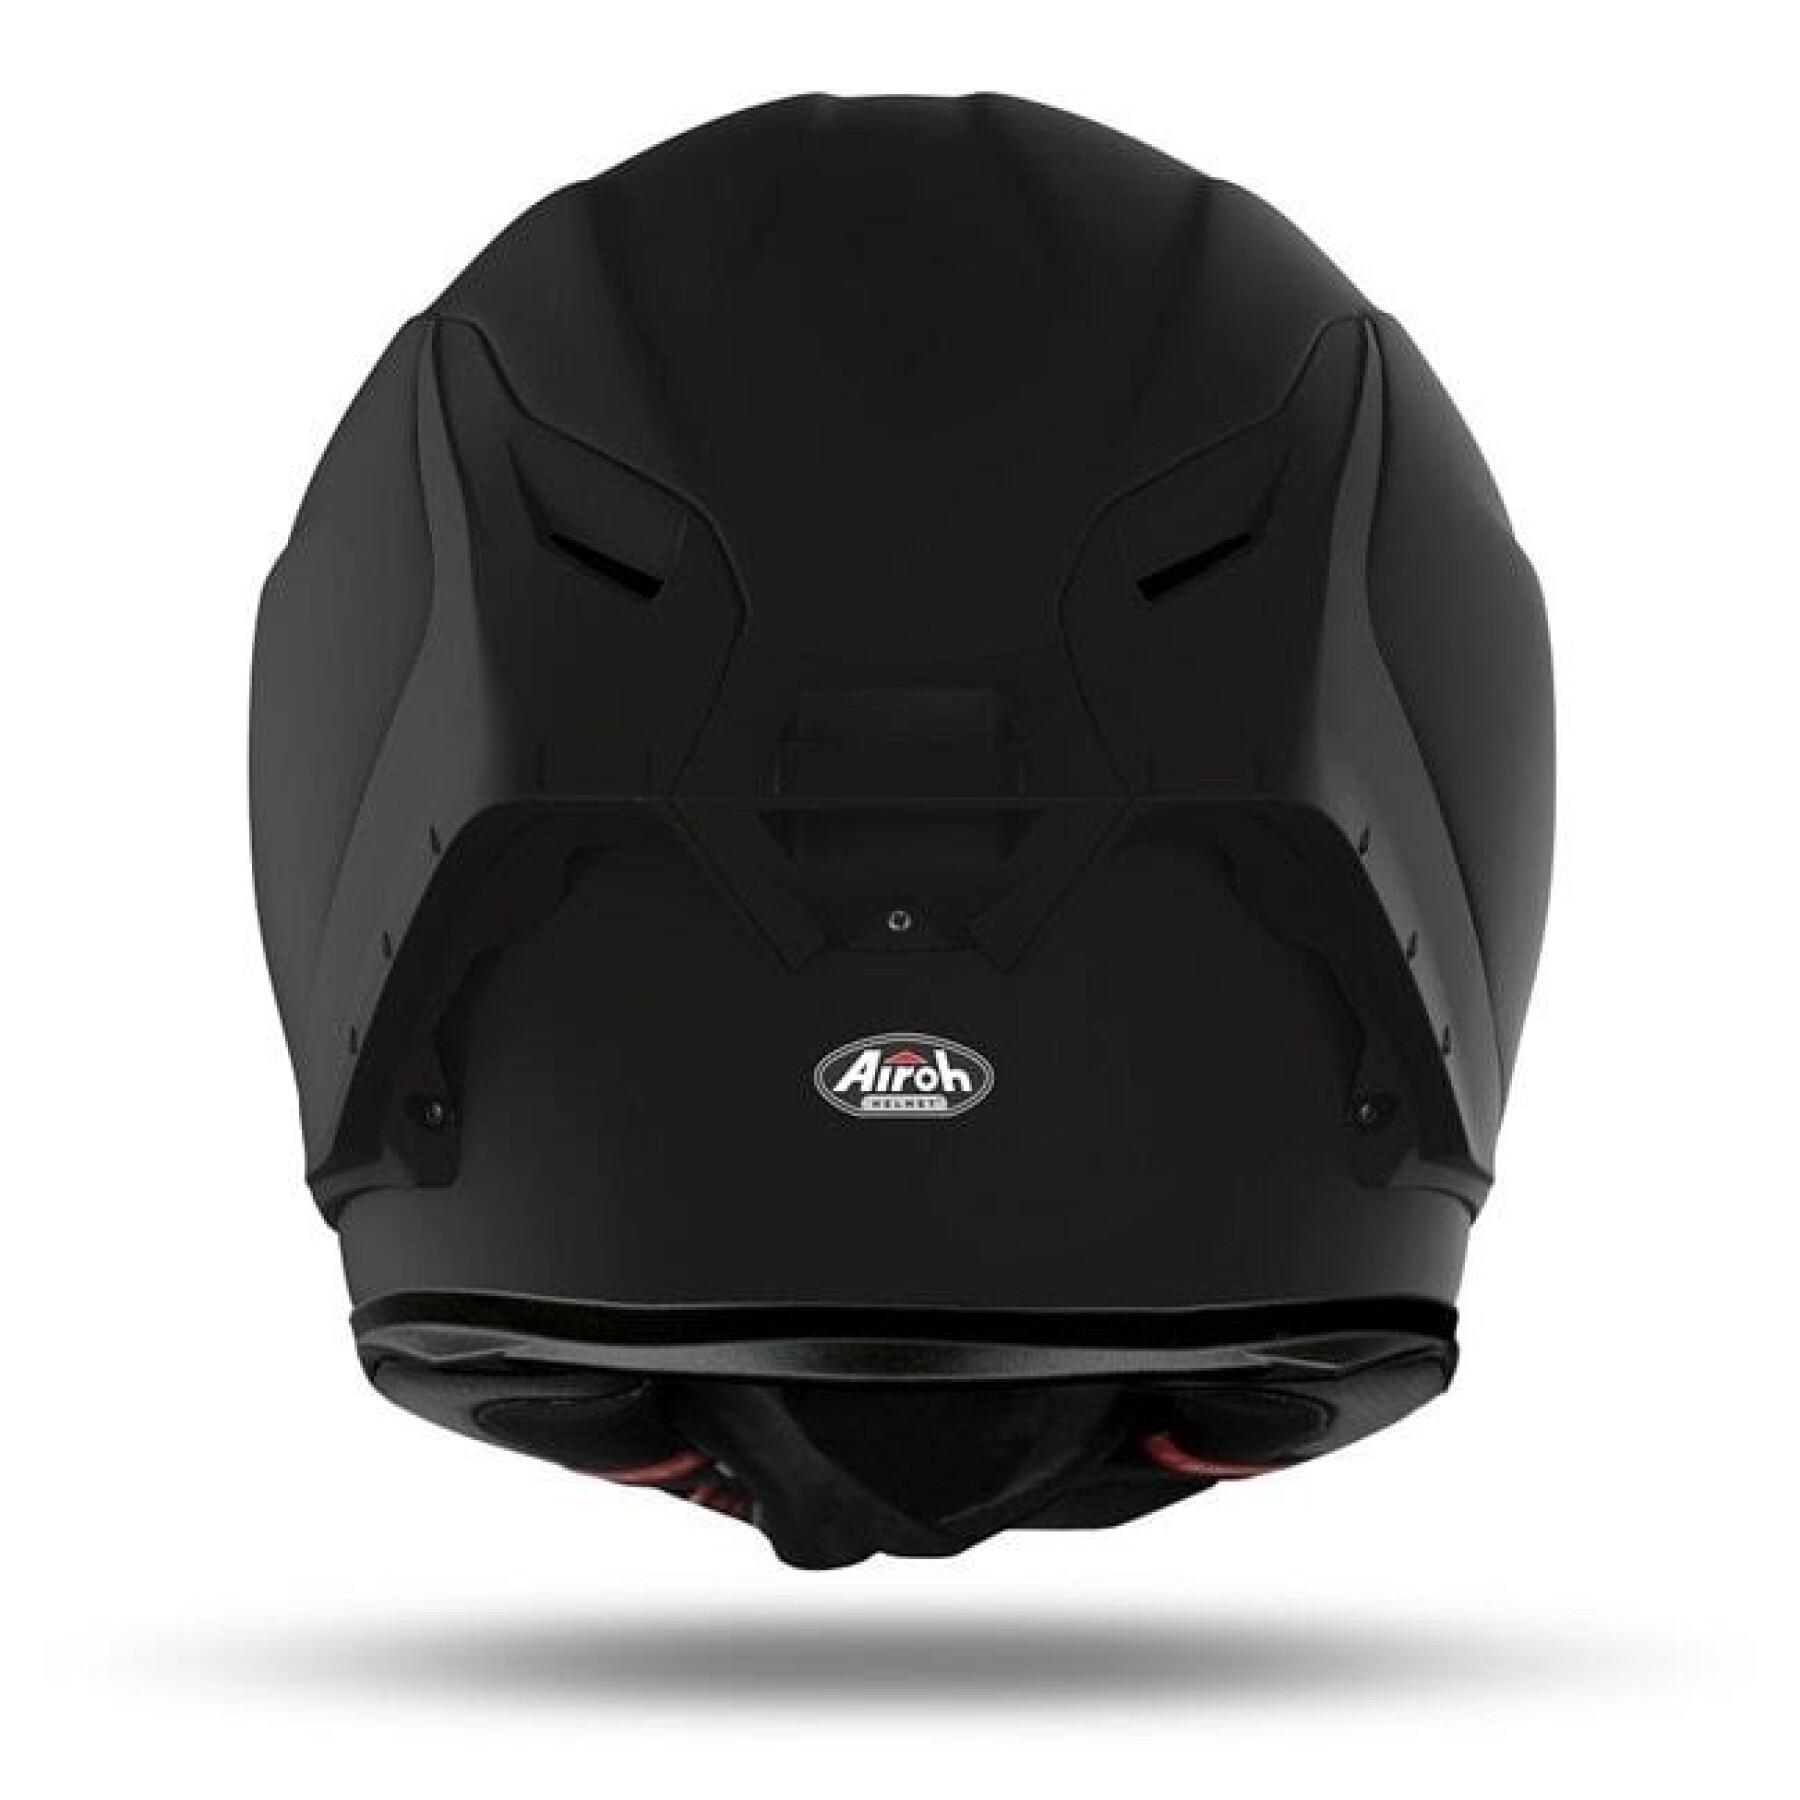 Full face motorcycle helmet Airoh GP550 S